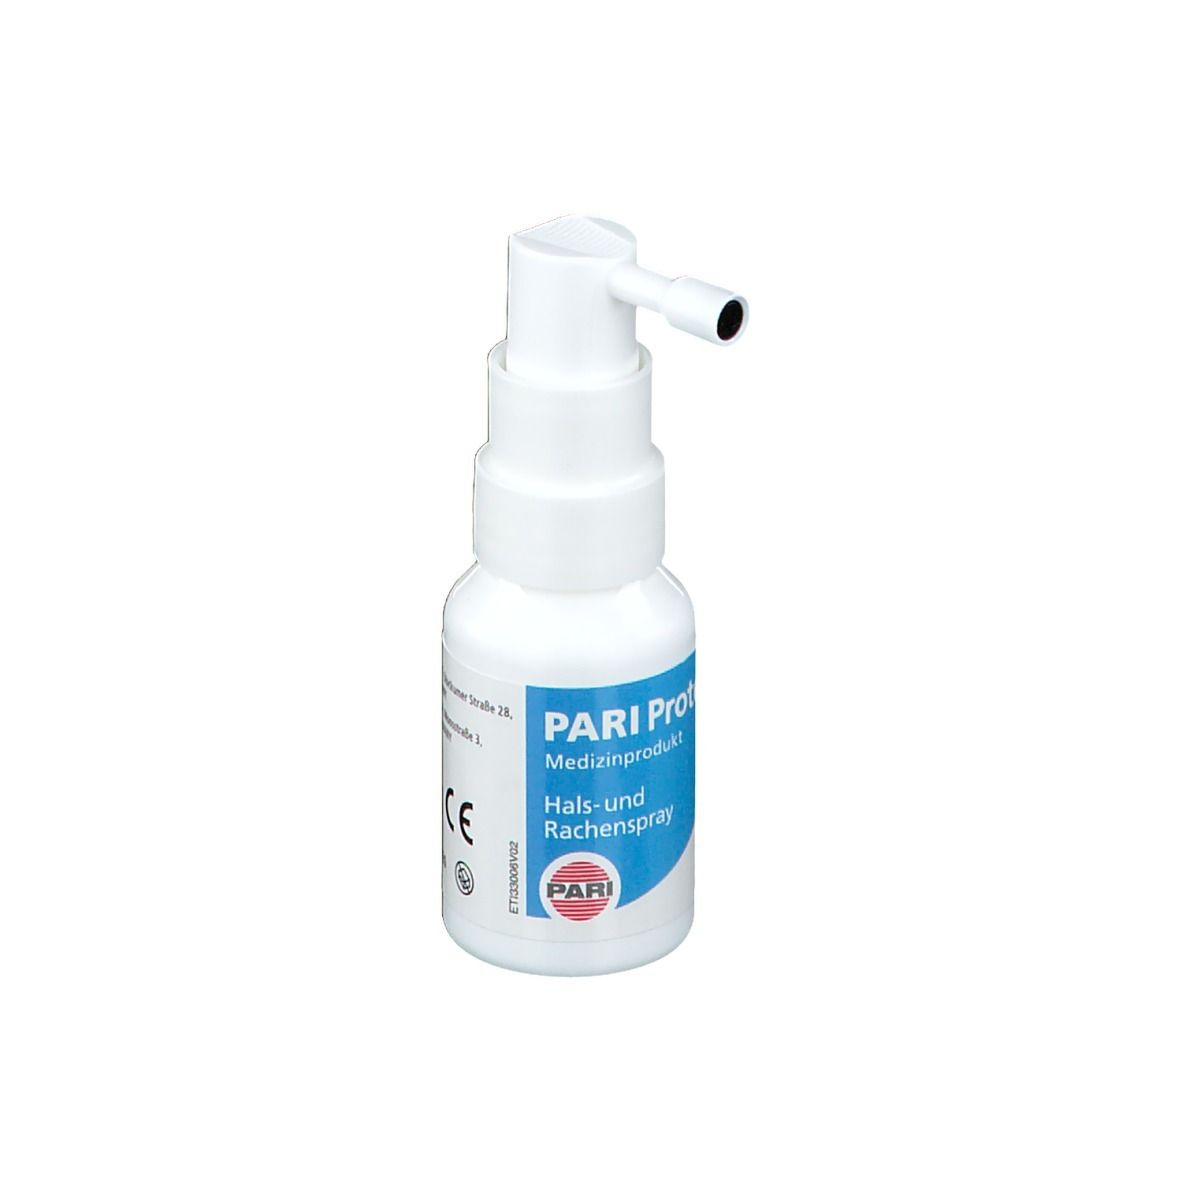 PARI ProTECT® Hals- und Rachenspray